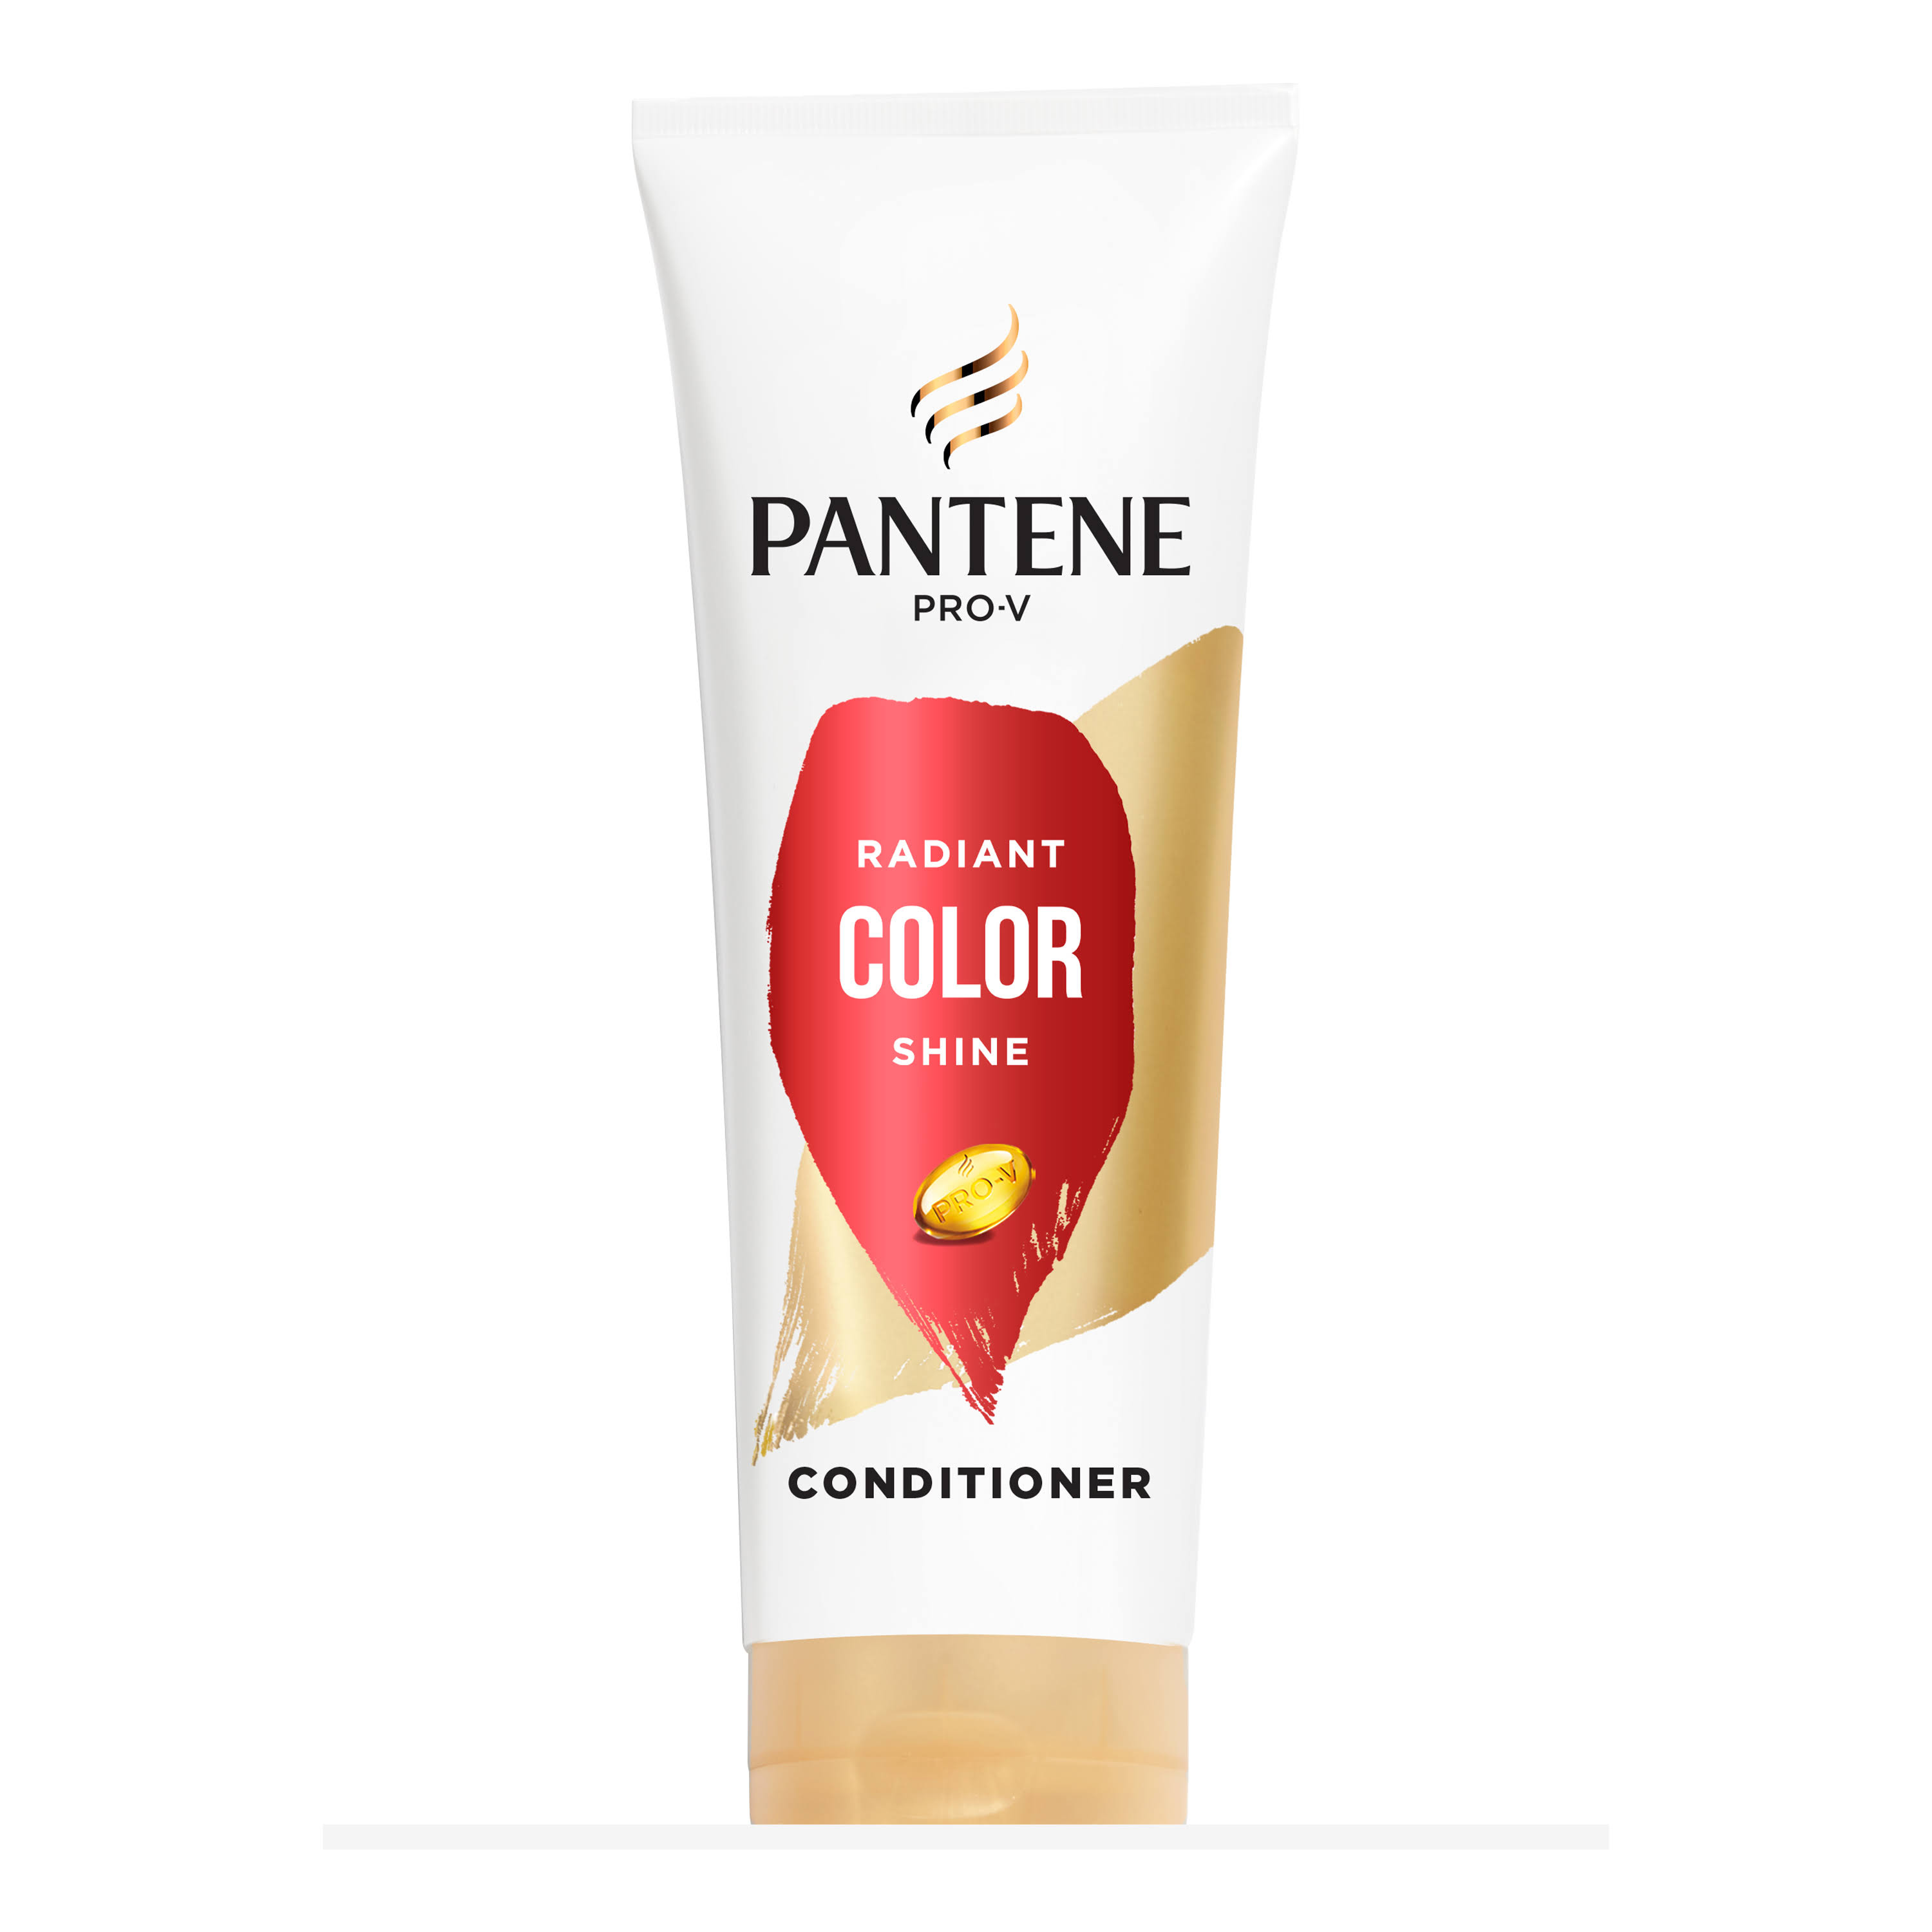 Pantene Pro-v Radiant Color Shine Conditioner, 10.4 Oz